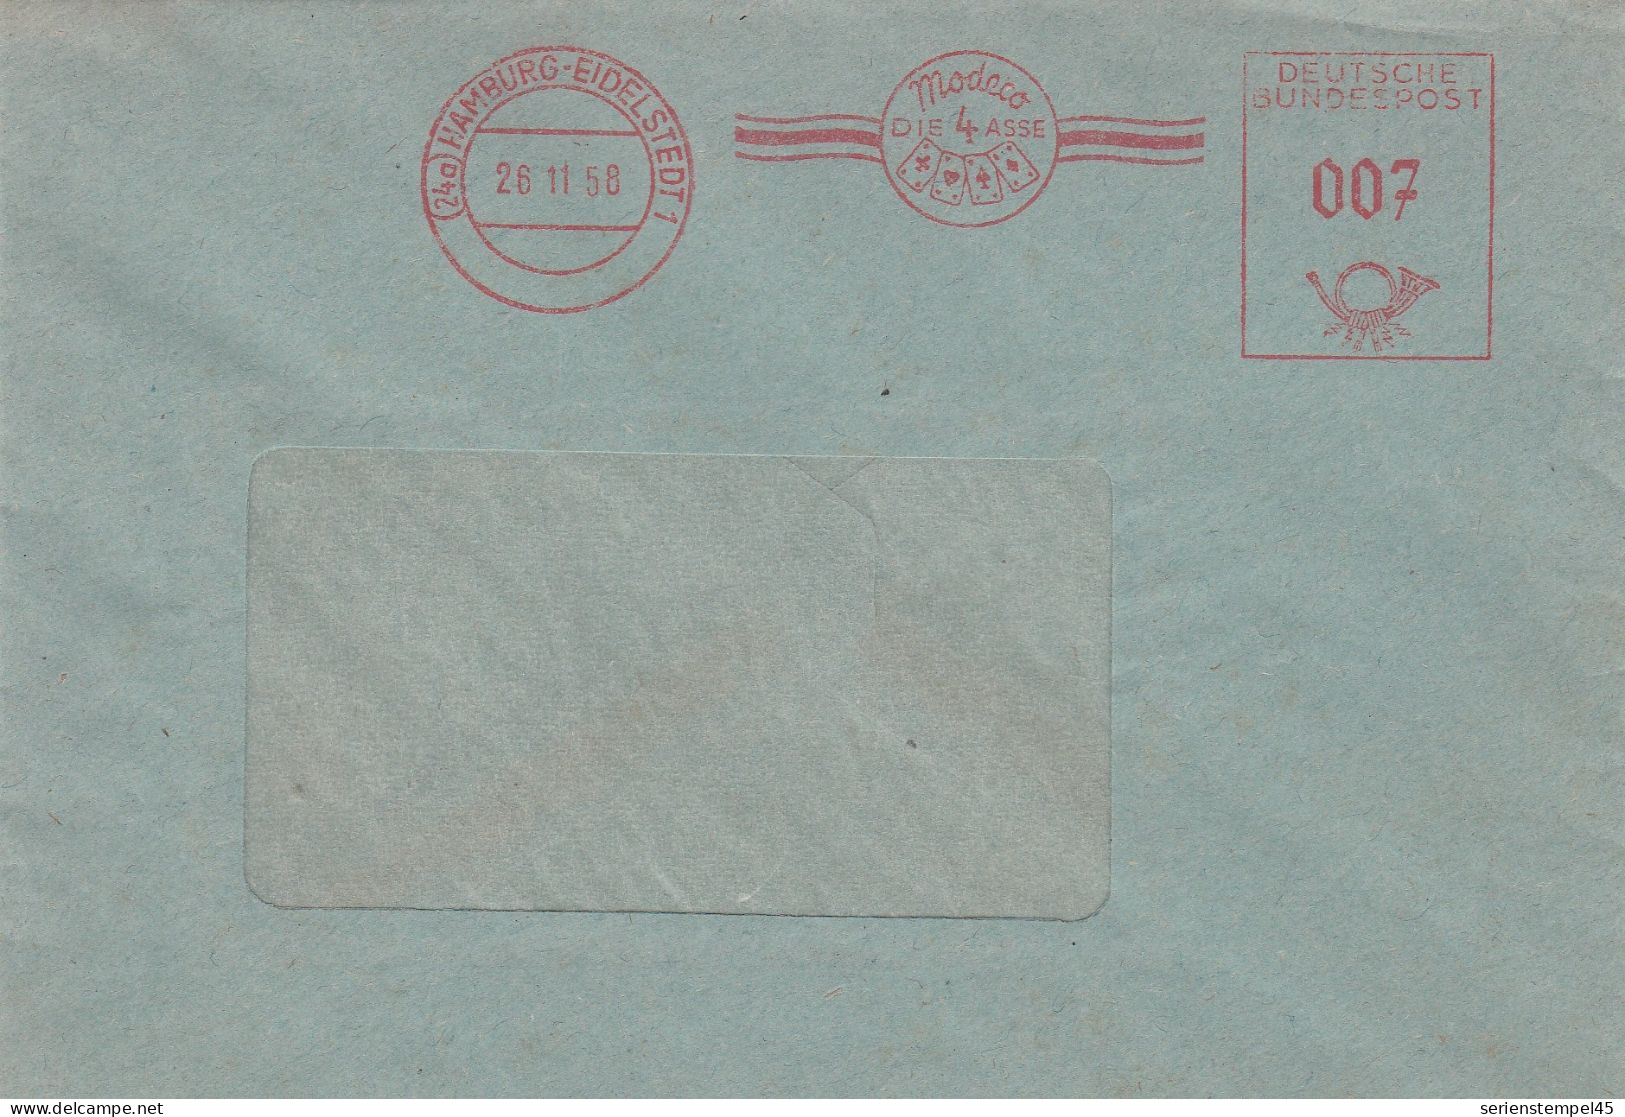 Bund Brief Mit Freistempel Rot Mit Motiv Kartenspiel Hamburg Eidelstedt 1958 Modeco Die 4 Asse - Non Classés